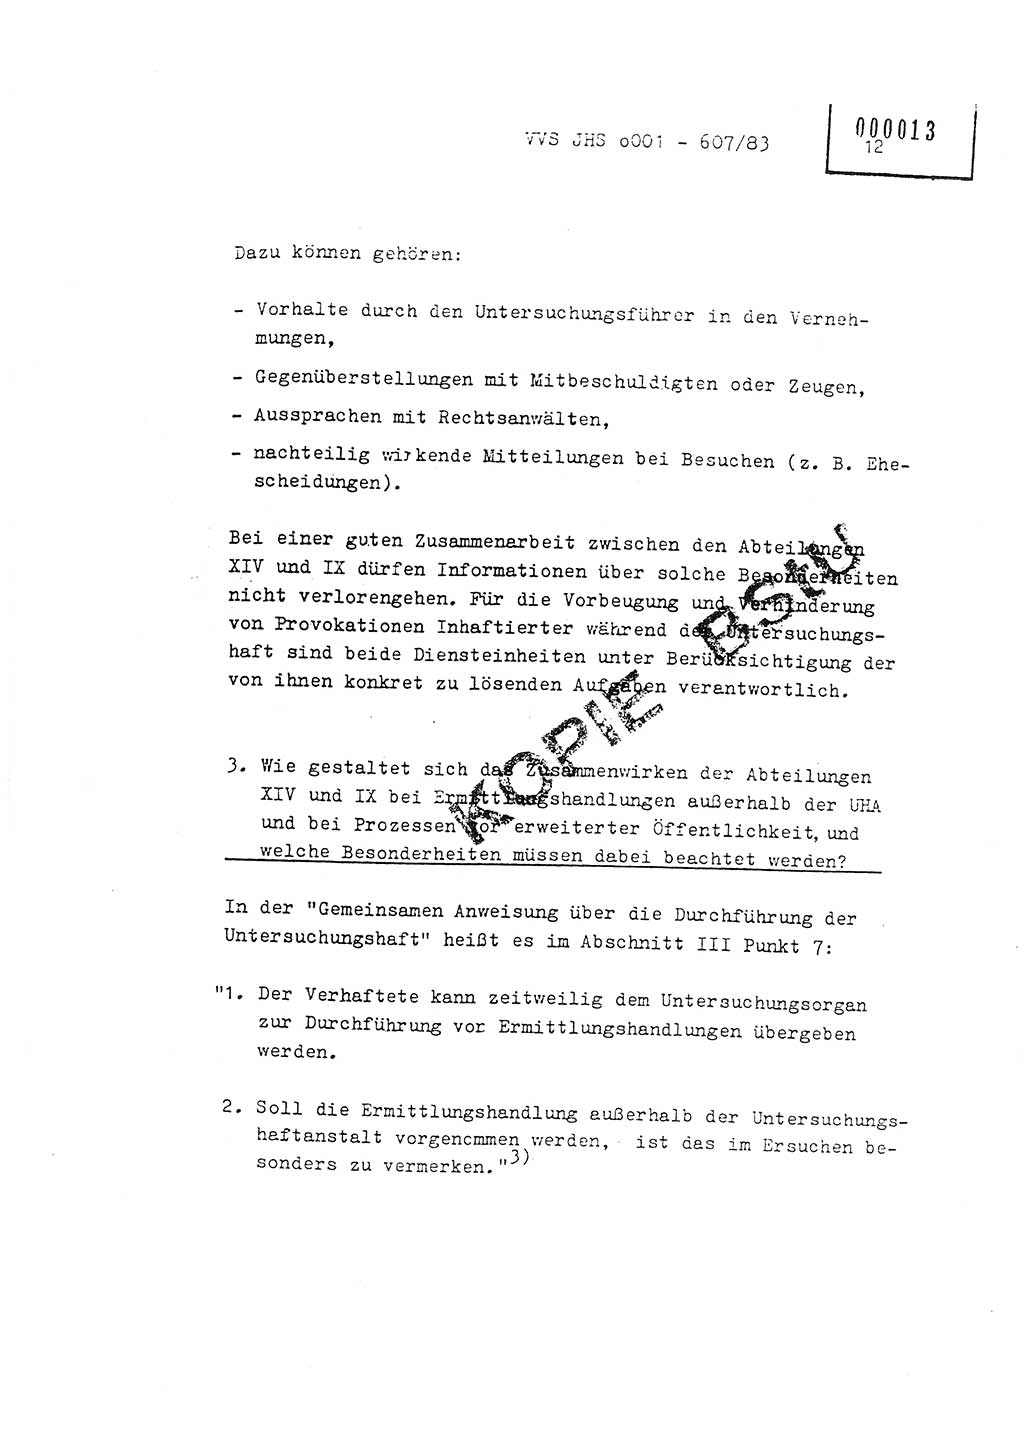 Fachschulabschlußarbeit Oberleutnant Hans-Joachim Saltmann (BV Rostock Abt. ⅩⅣ), Ministerium für Staatssicherheit (MfS) [Deutsche Demokratische Republik (DDR)], Juristische Hochschule (JHS), Vertrauliche Verschlußsache (VVS) o001-607/83, Potsdam 1983, Seite 12 (FS-Abschl.-Arb. MfS DDR JHS VVS o001-607/83 1983, S. 12)